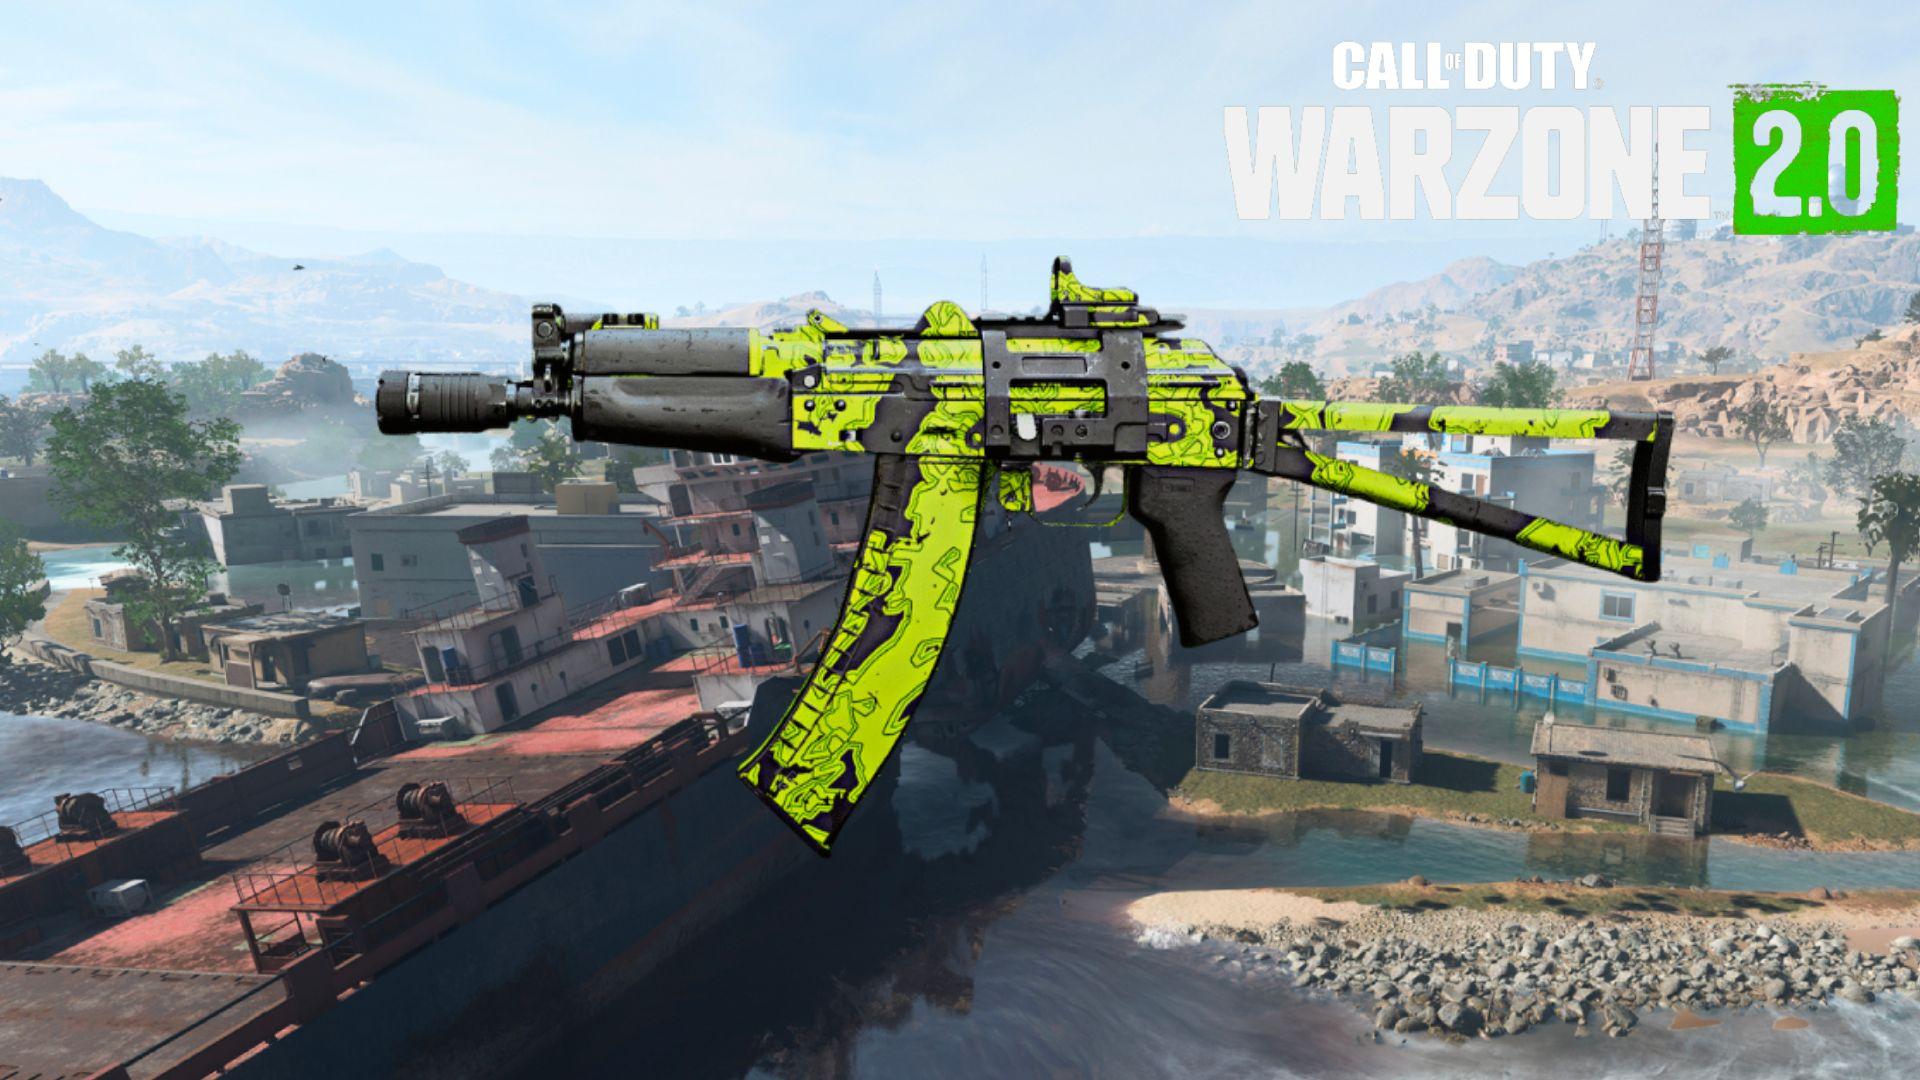 Kastov 74u in green skin on Warzone 2 al mazrah map